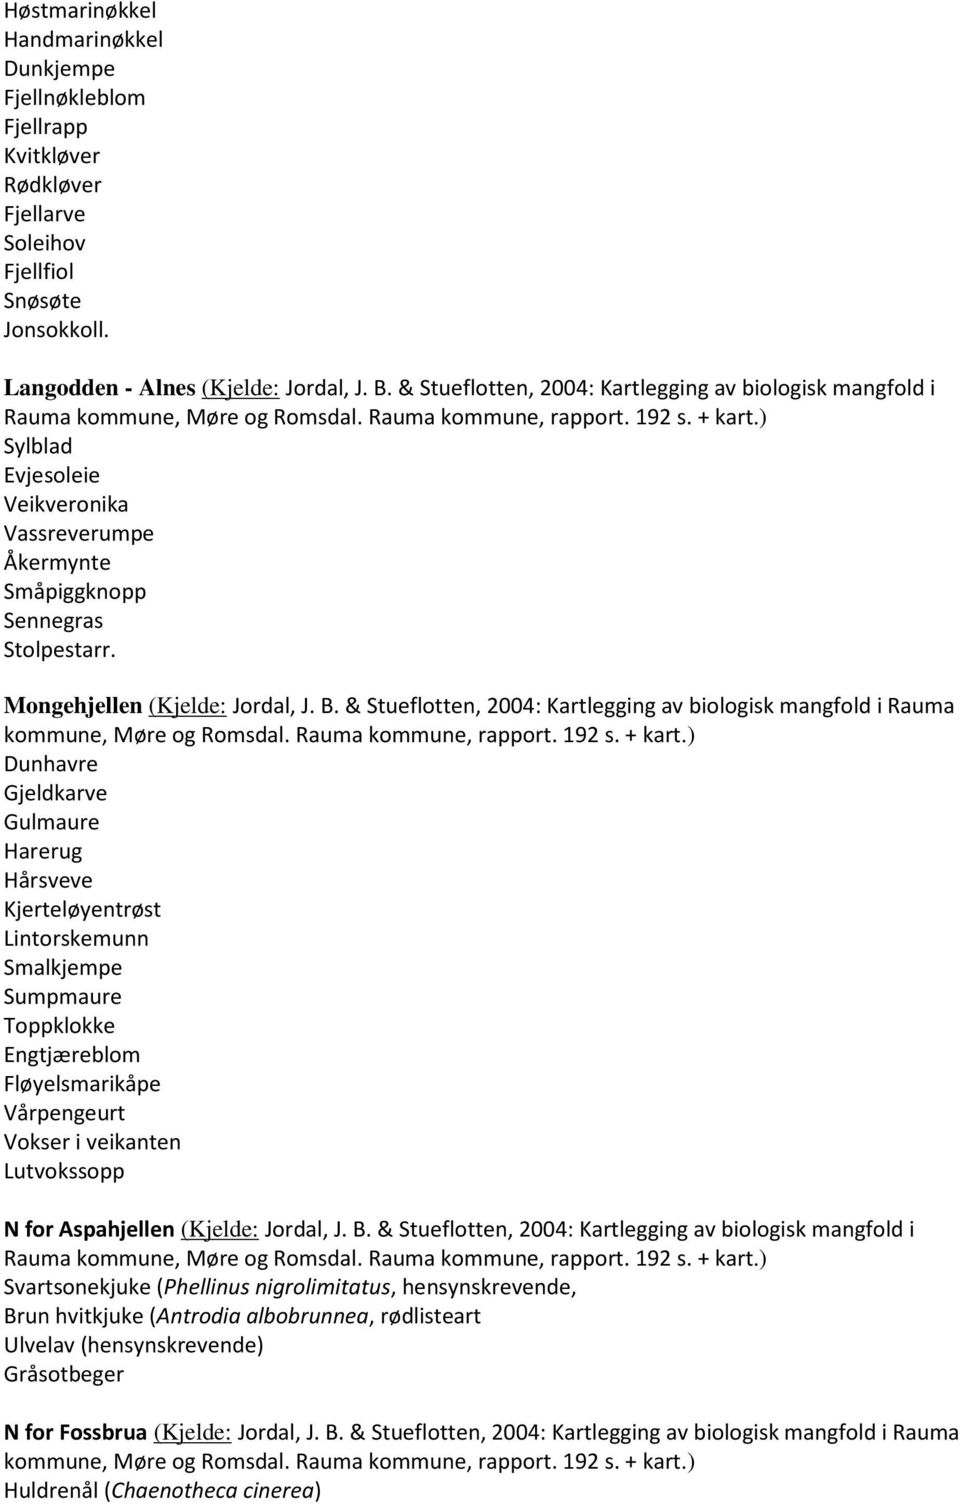 & Stueflotten, 2004: Kartlegging av biologisk mangfold i Rauma Dunhavre Gjeldkarve Gulmaure Hårsveve Kjerteløyentrøst Lintorskemunn Smalkjempe Sumpmaure Toppklokke Engtjæreblom Fløyelsmarikåpe